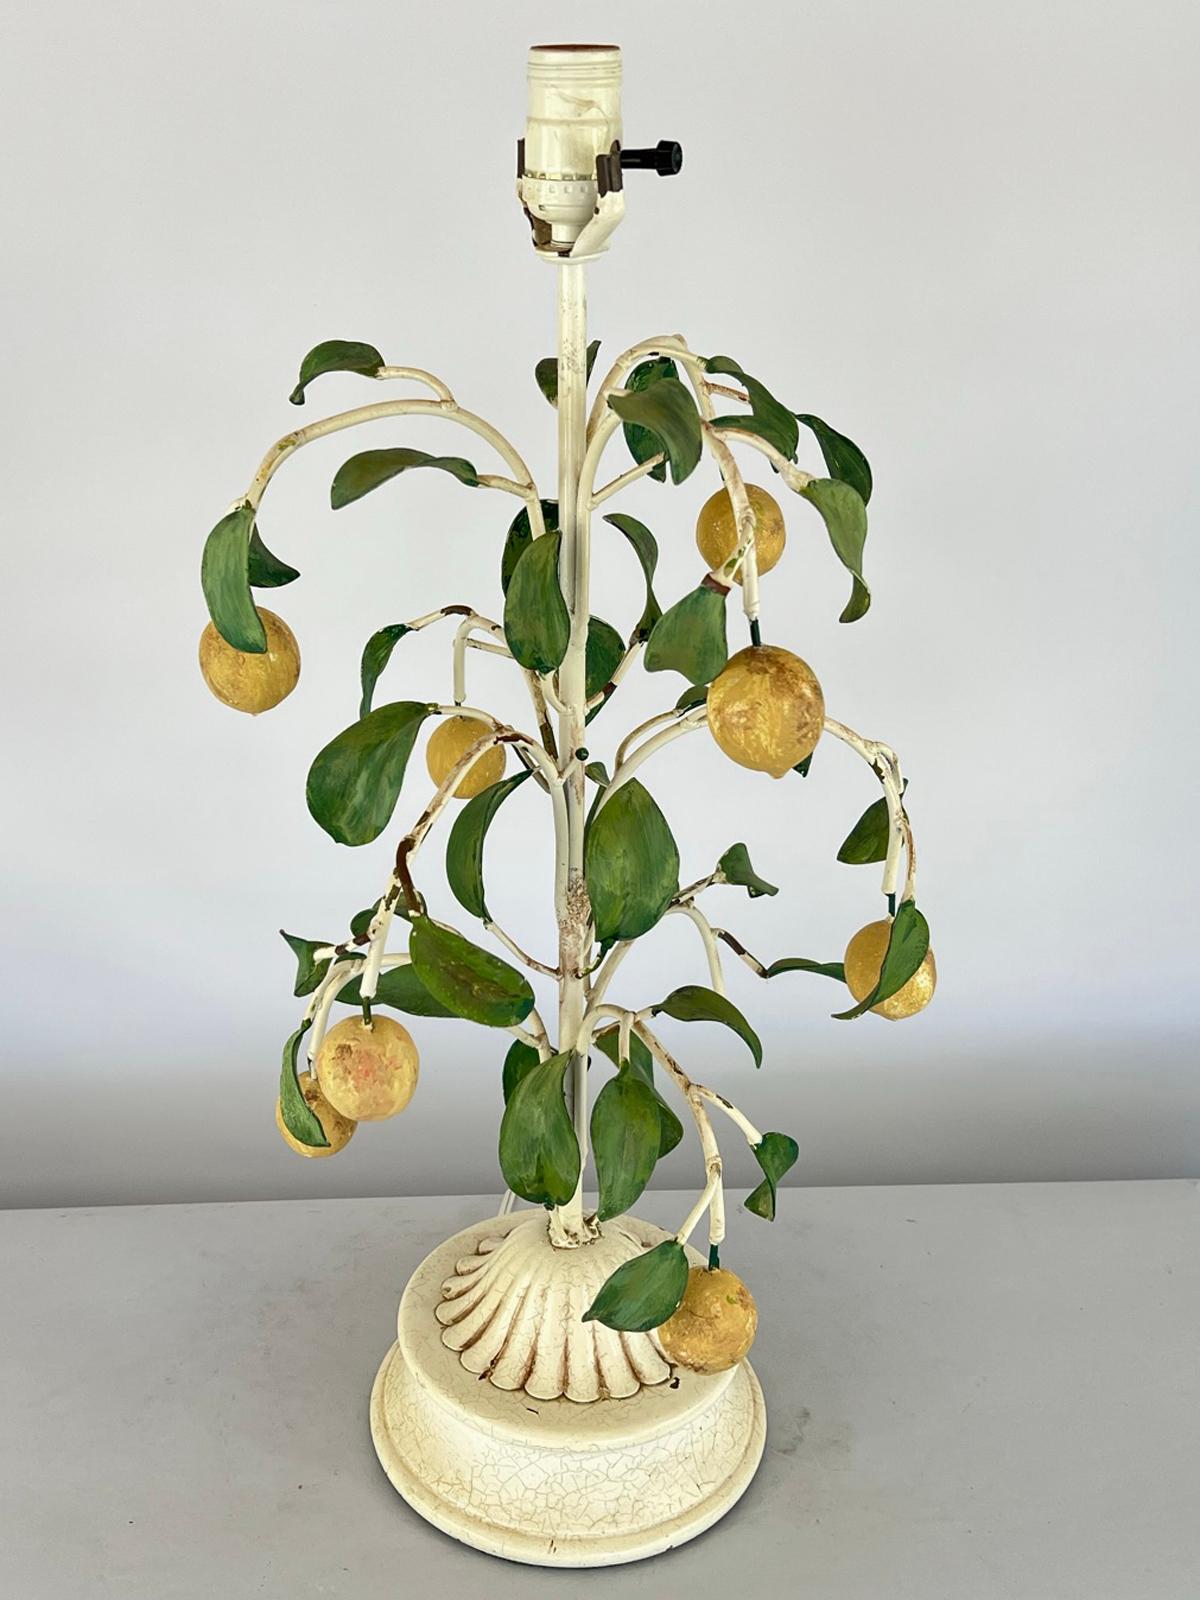 Lampe de table vintage, en métal polychrome et composite, en forme de citronnier avec des branches feuillagées, reposant sur un socle rond. Un fleuron assorti est inclus. 

Stock ID : D3618.